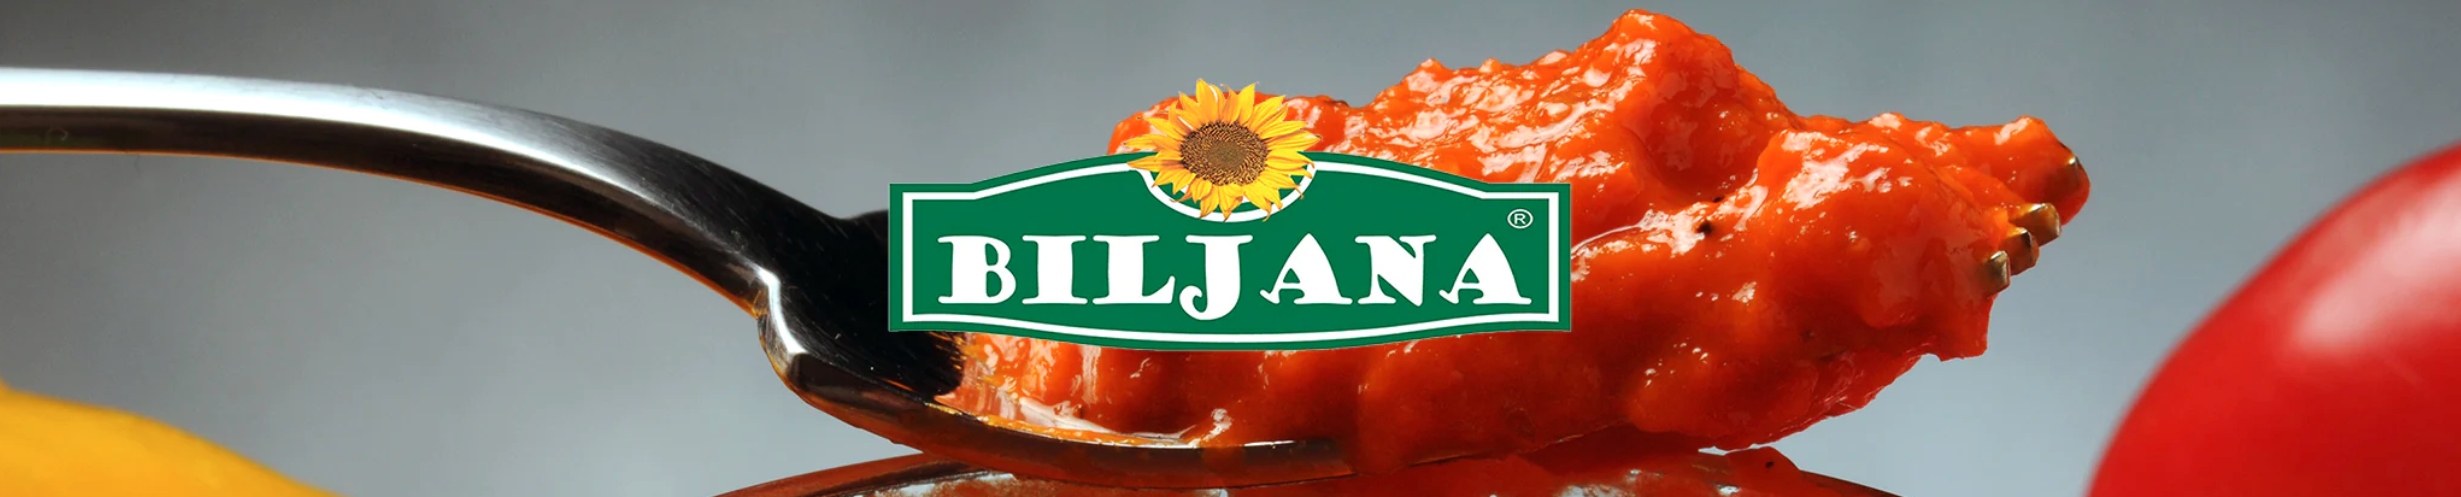 Biljana - Global Imports and Exports Wholesale